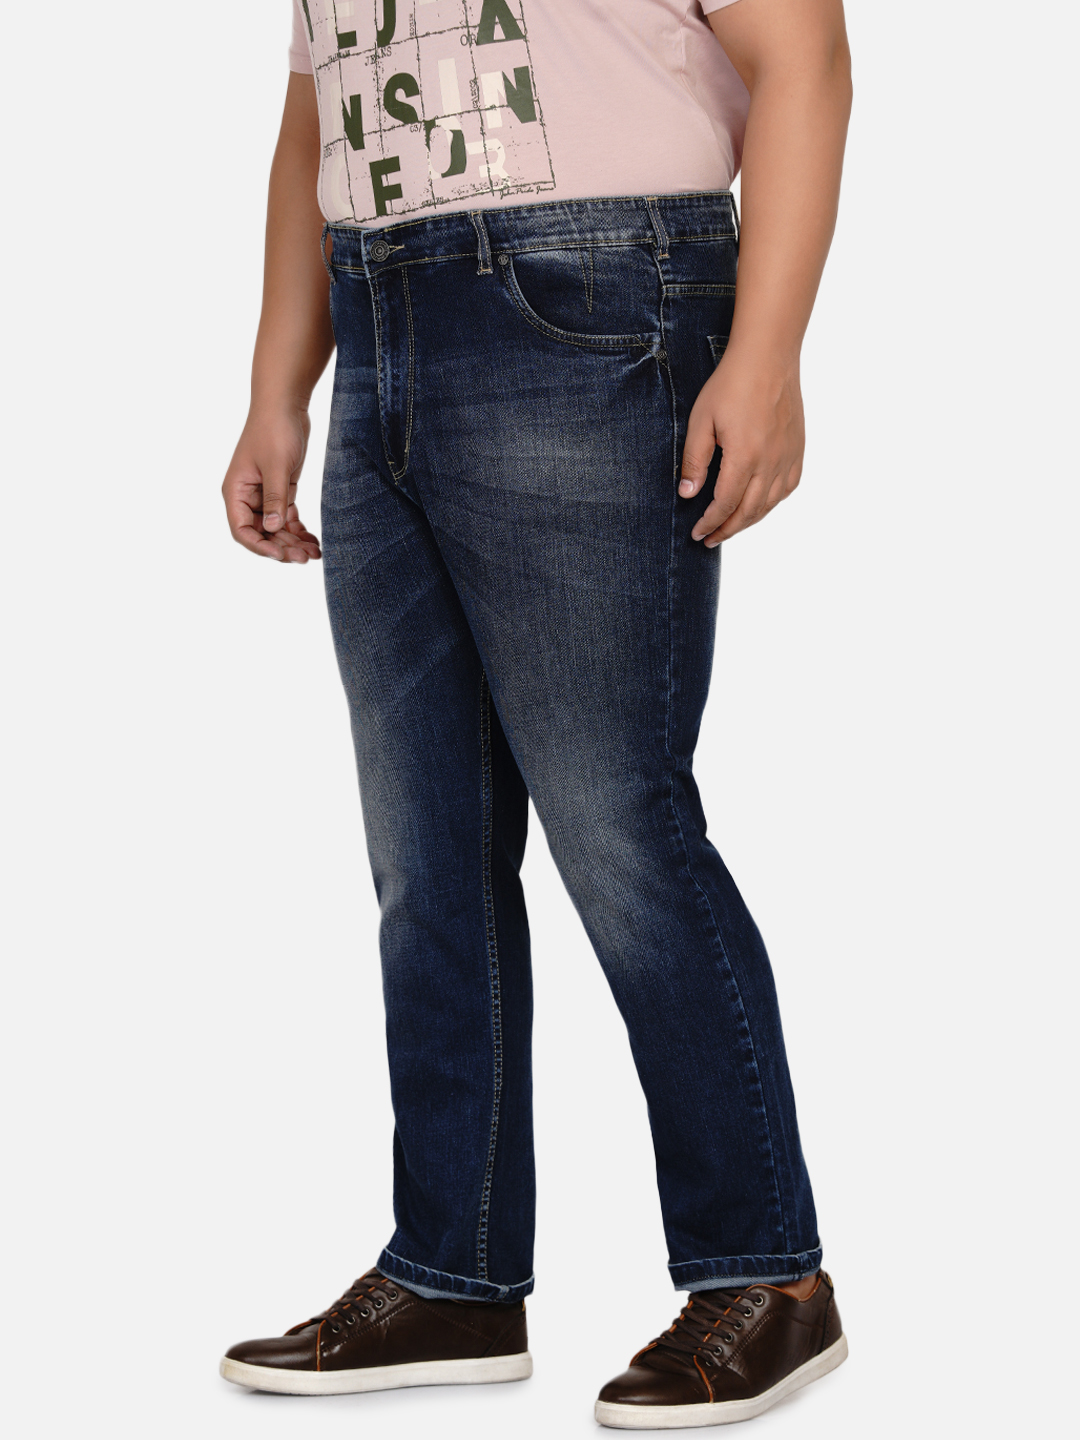 affordables/jeans/EJPJ2034/ejpj2034-5.jpg